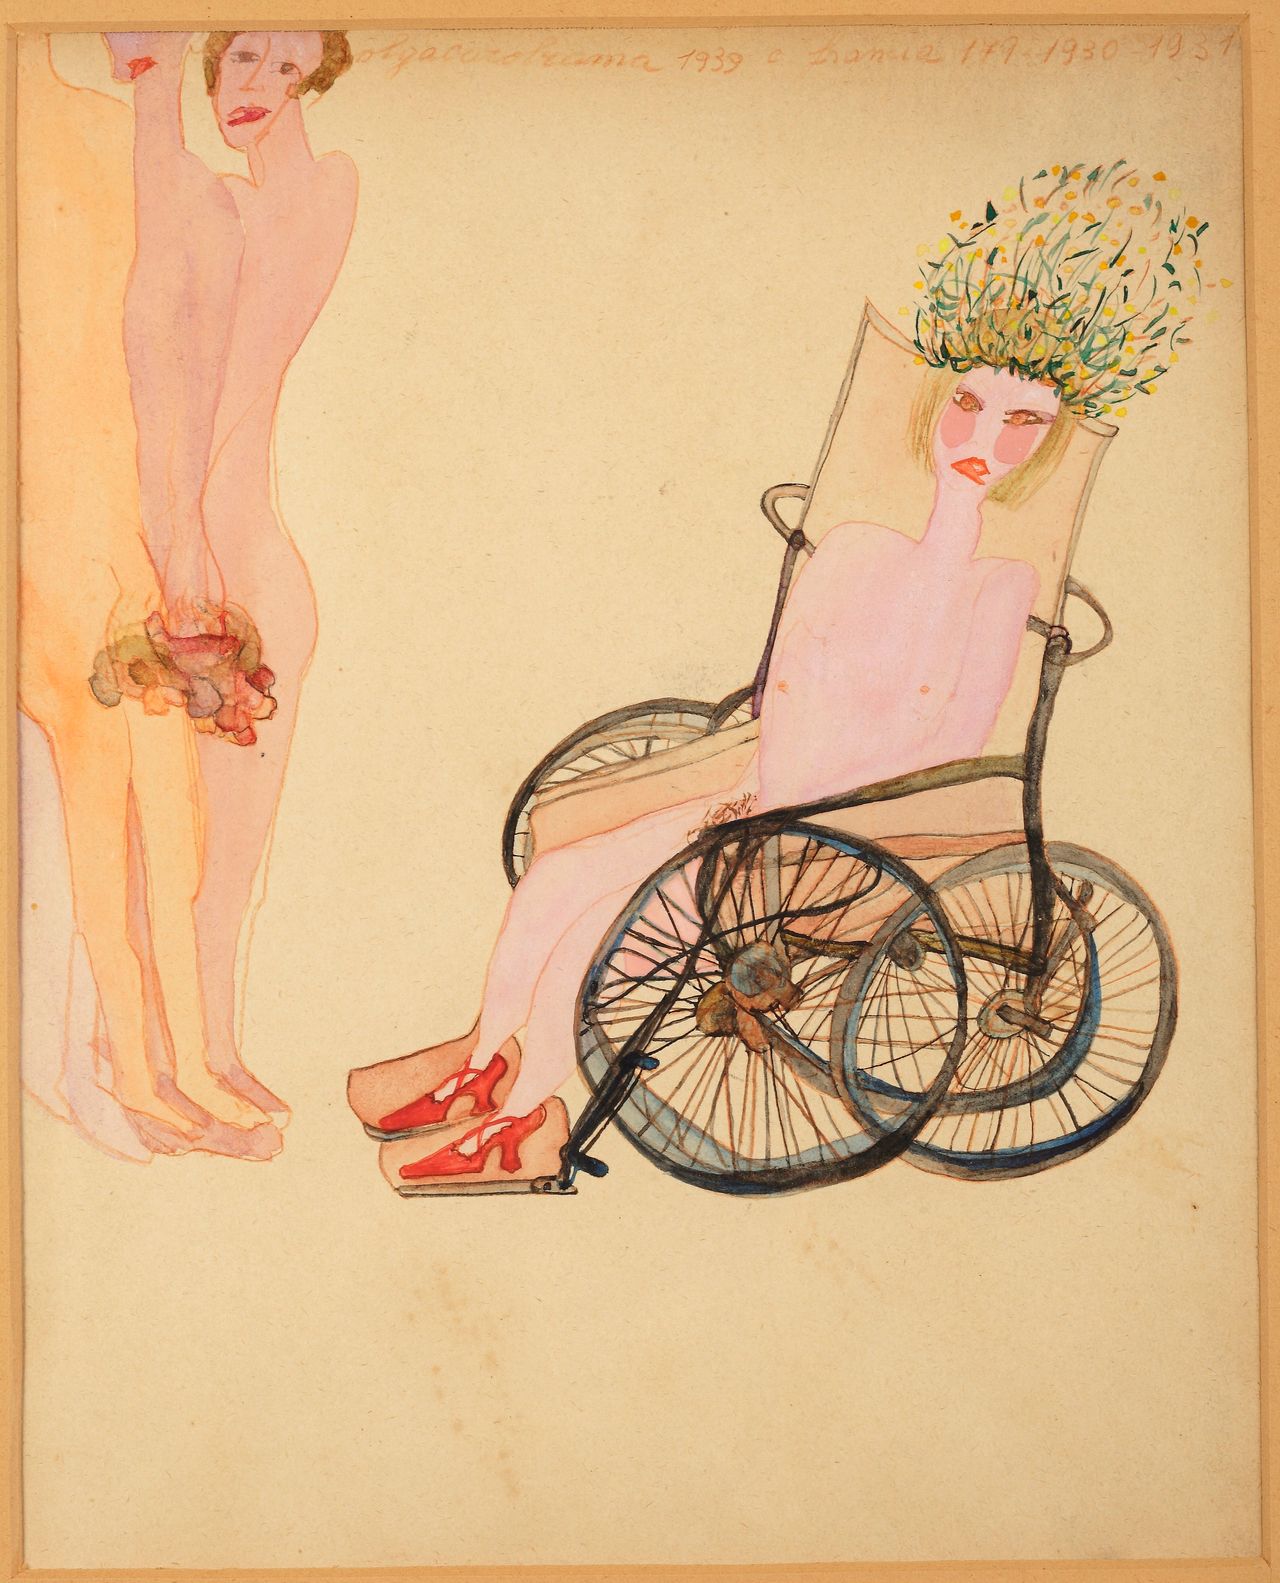 Carol Rama, "Appassionata [Passionate]," 1939, watercolor on paper 